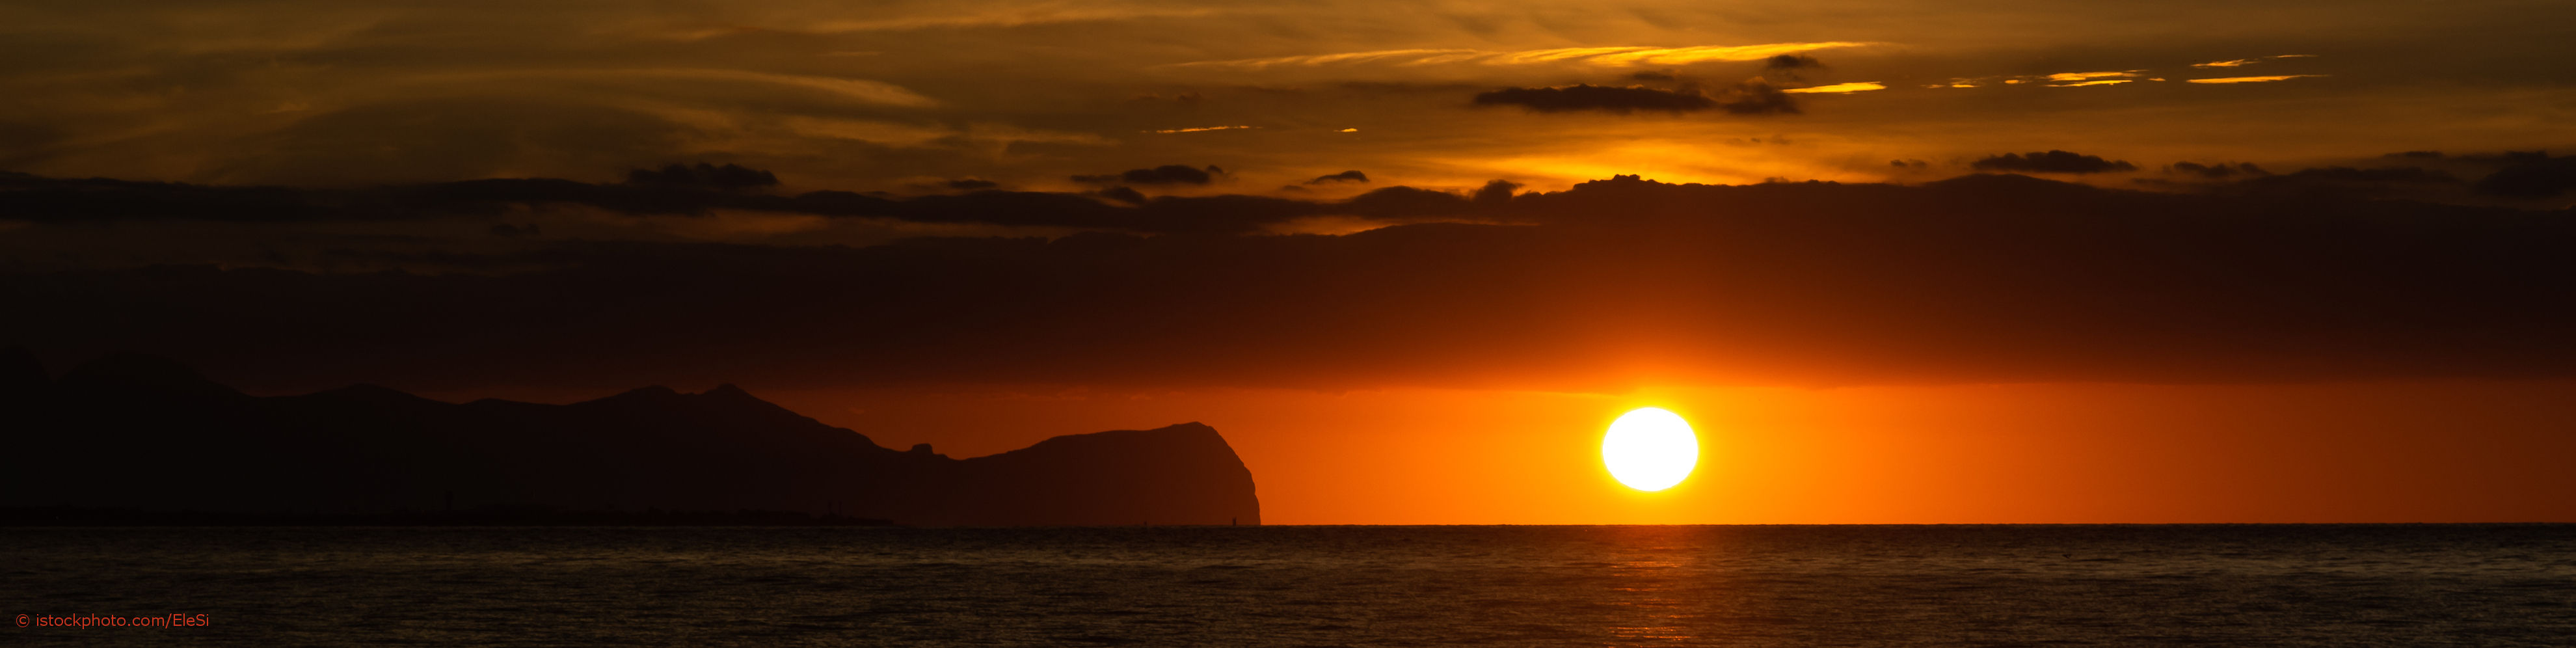 Entspannung für die Seele kann auch ein Sonnenuntergang am Strand auf Sizilien sein.